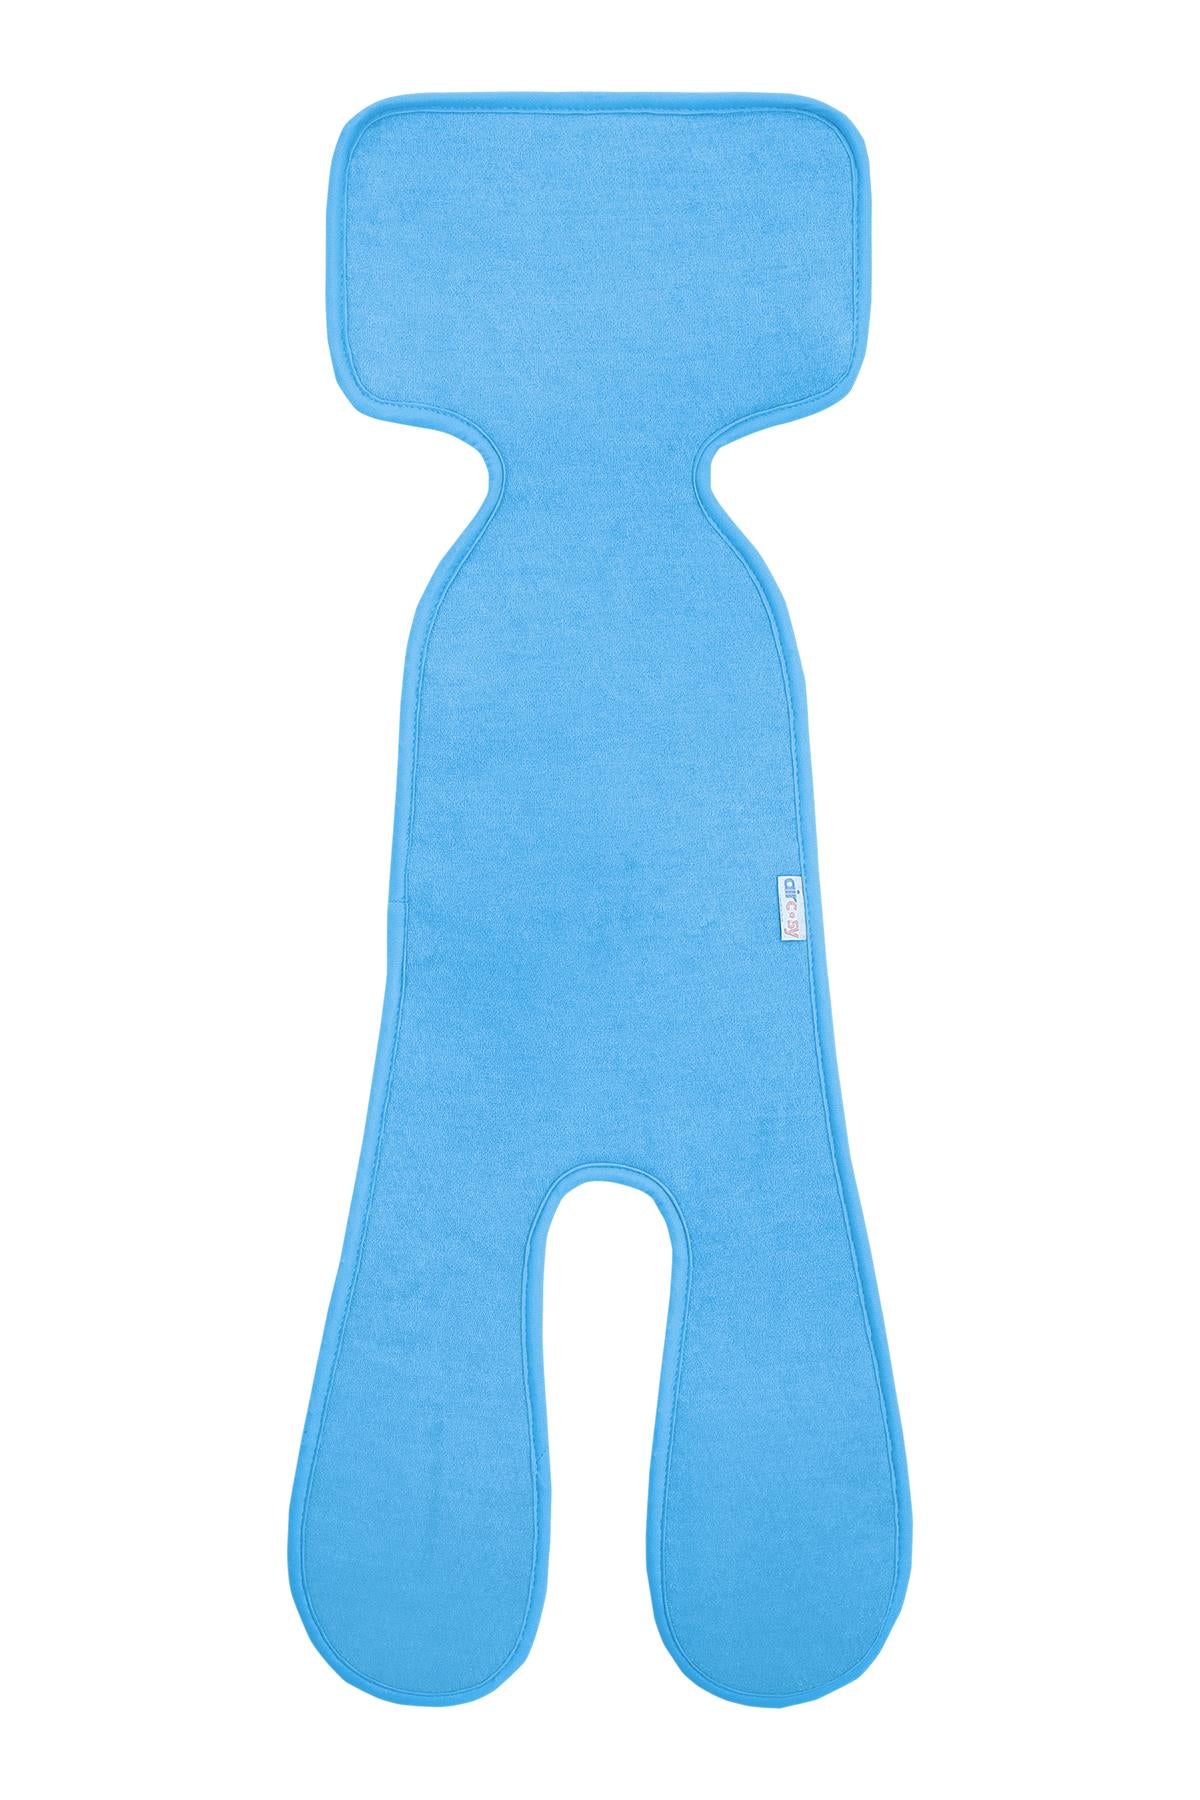 Organik Pamuklu Bebek Arabası Minderi Mavi